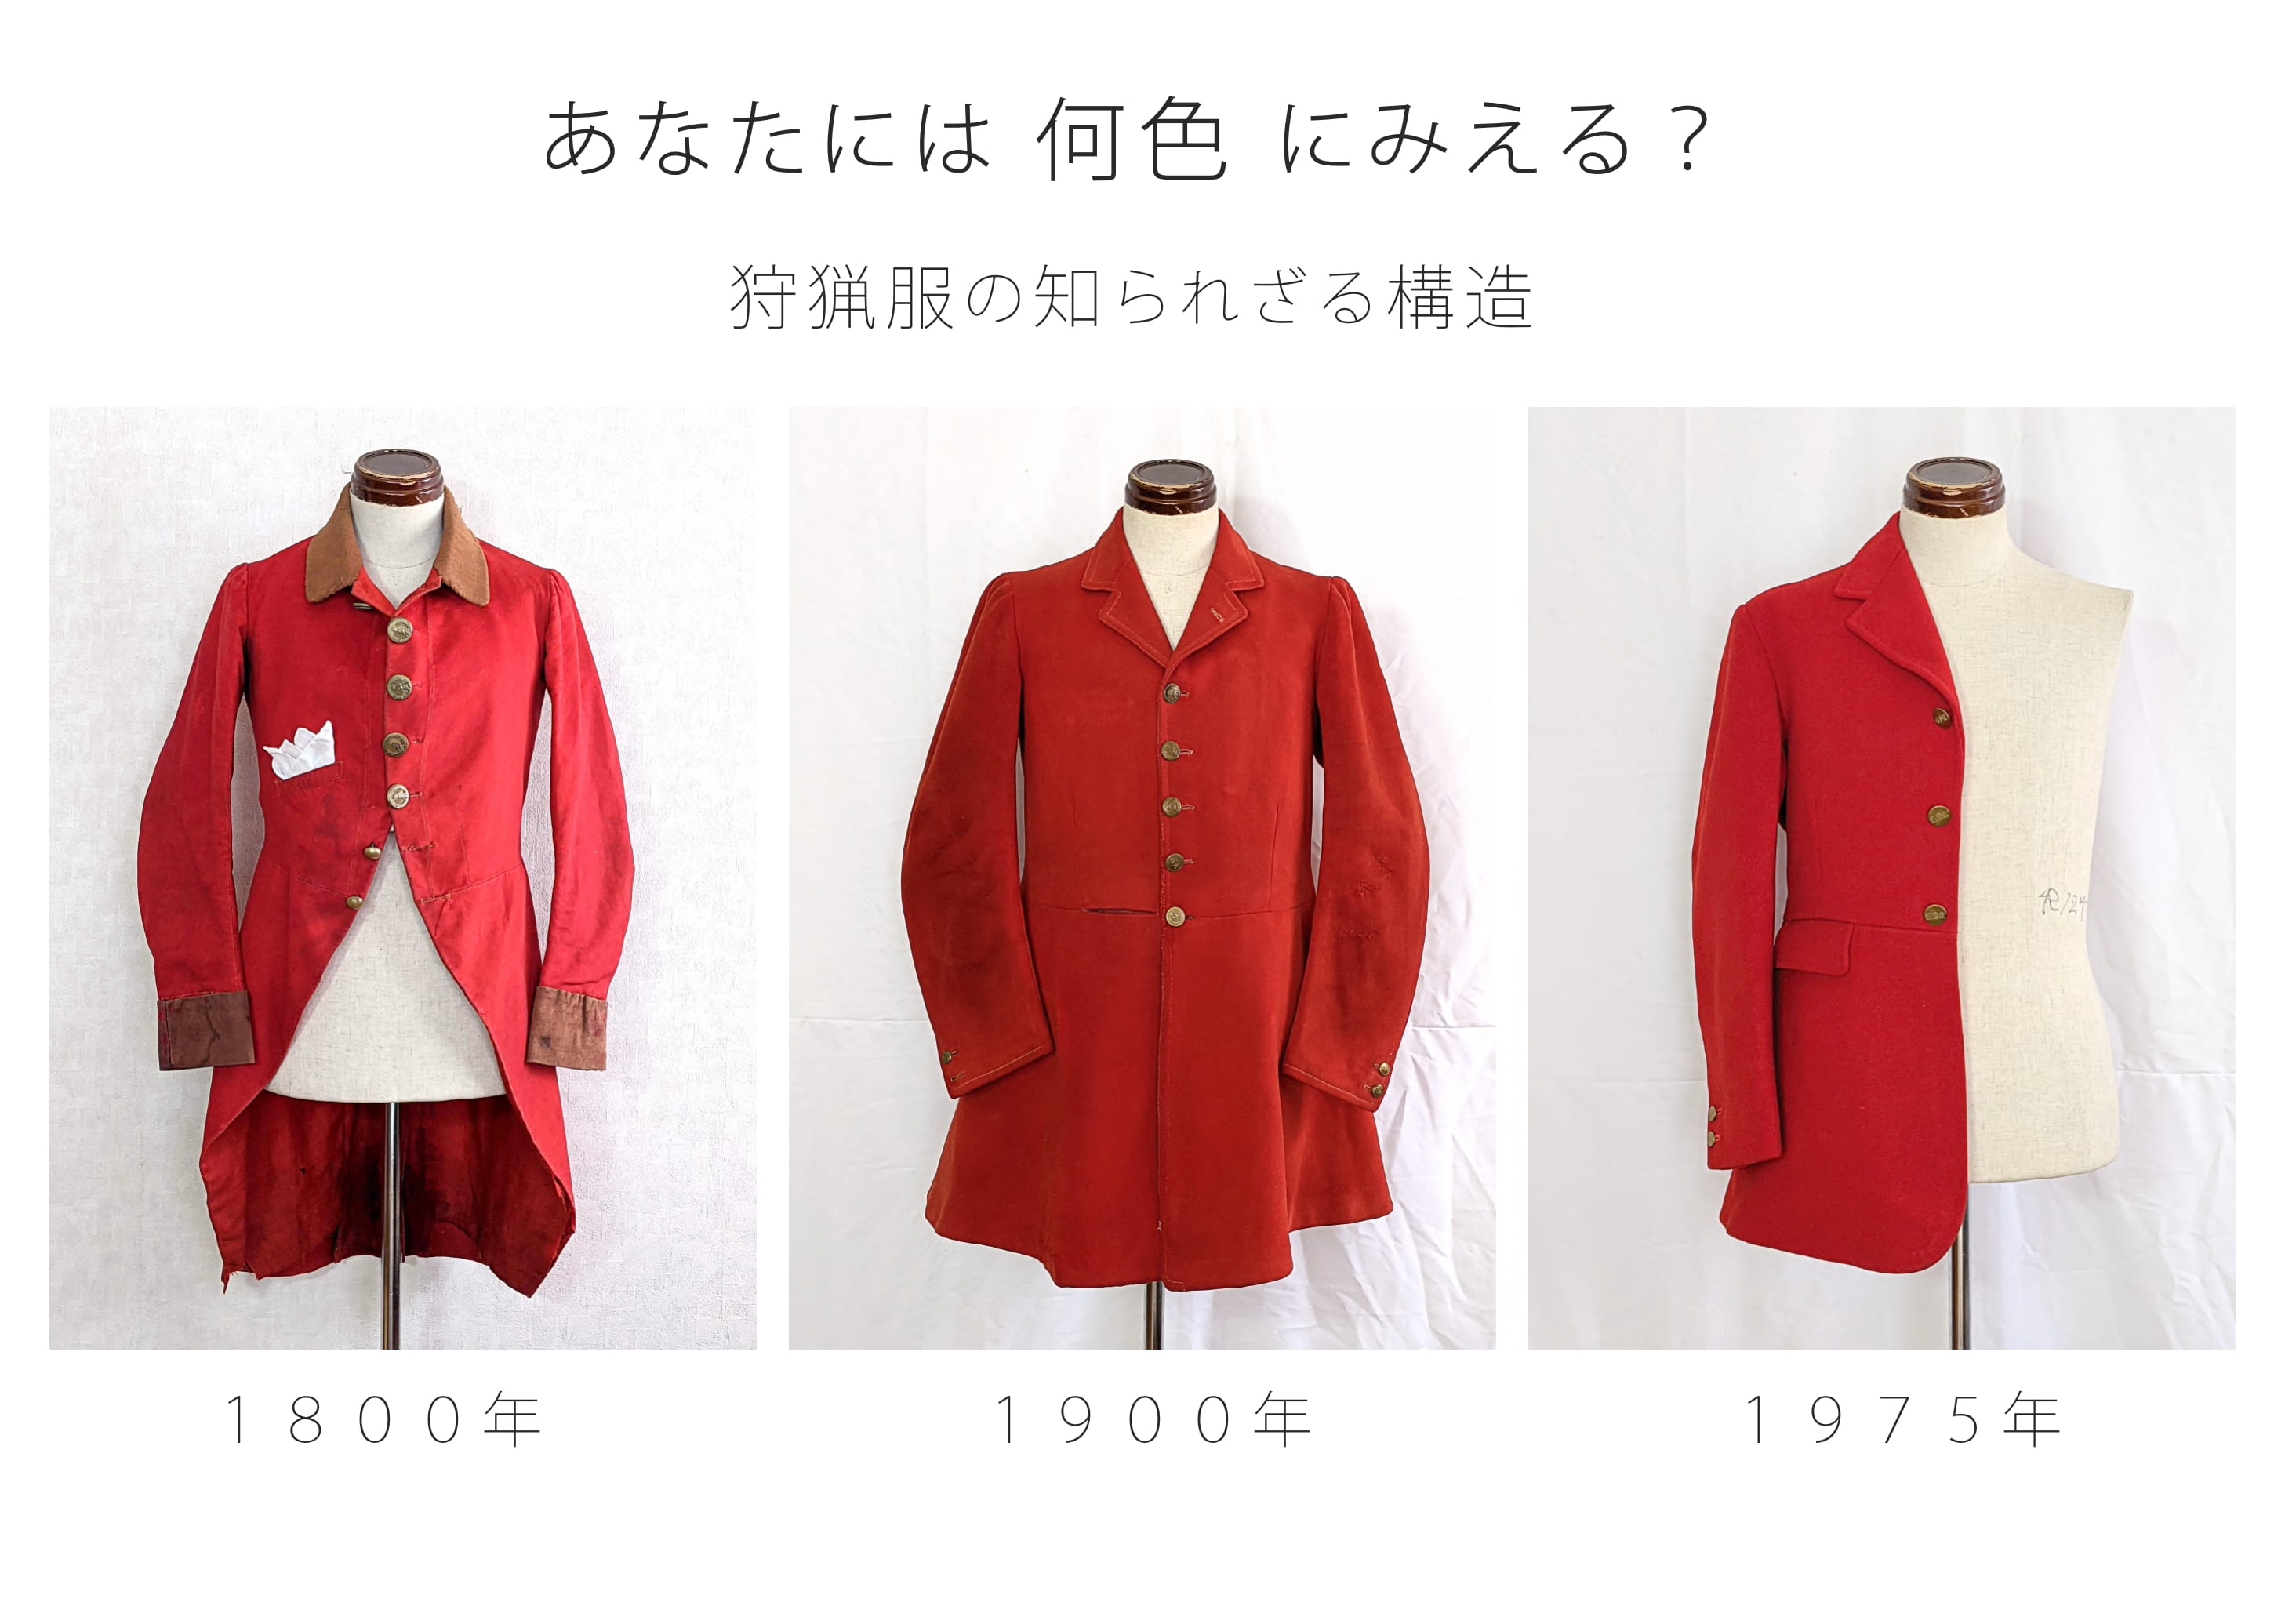 衣服標本家 長谷川 狩猟服の歴史と構造 を簡潔に紹介します 今回は 真っ赤な狩猟服 にフィーチャーしてみましょう この服 皆さんには 何色 にみえますか 真っ赤な狩猟服と言いましたが 素直に赤色と言わないのがイギリスの美意識です 色の向こう側